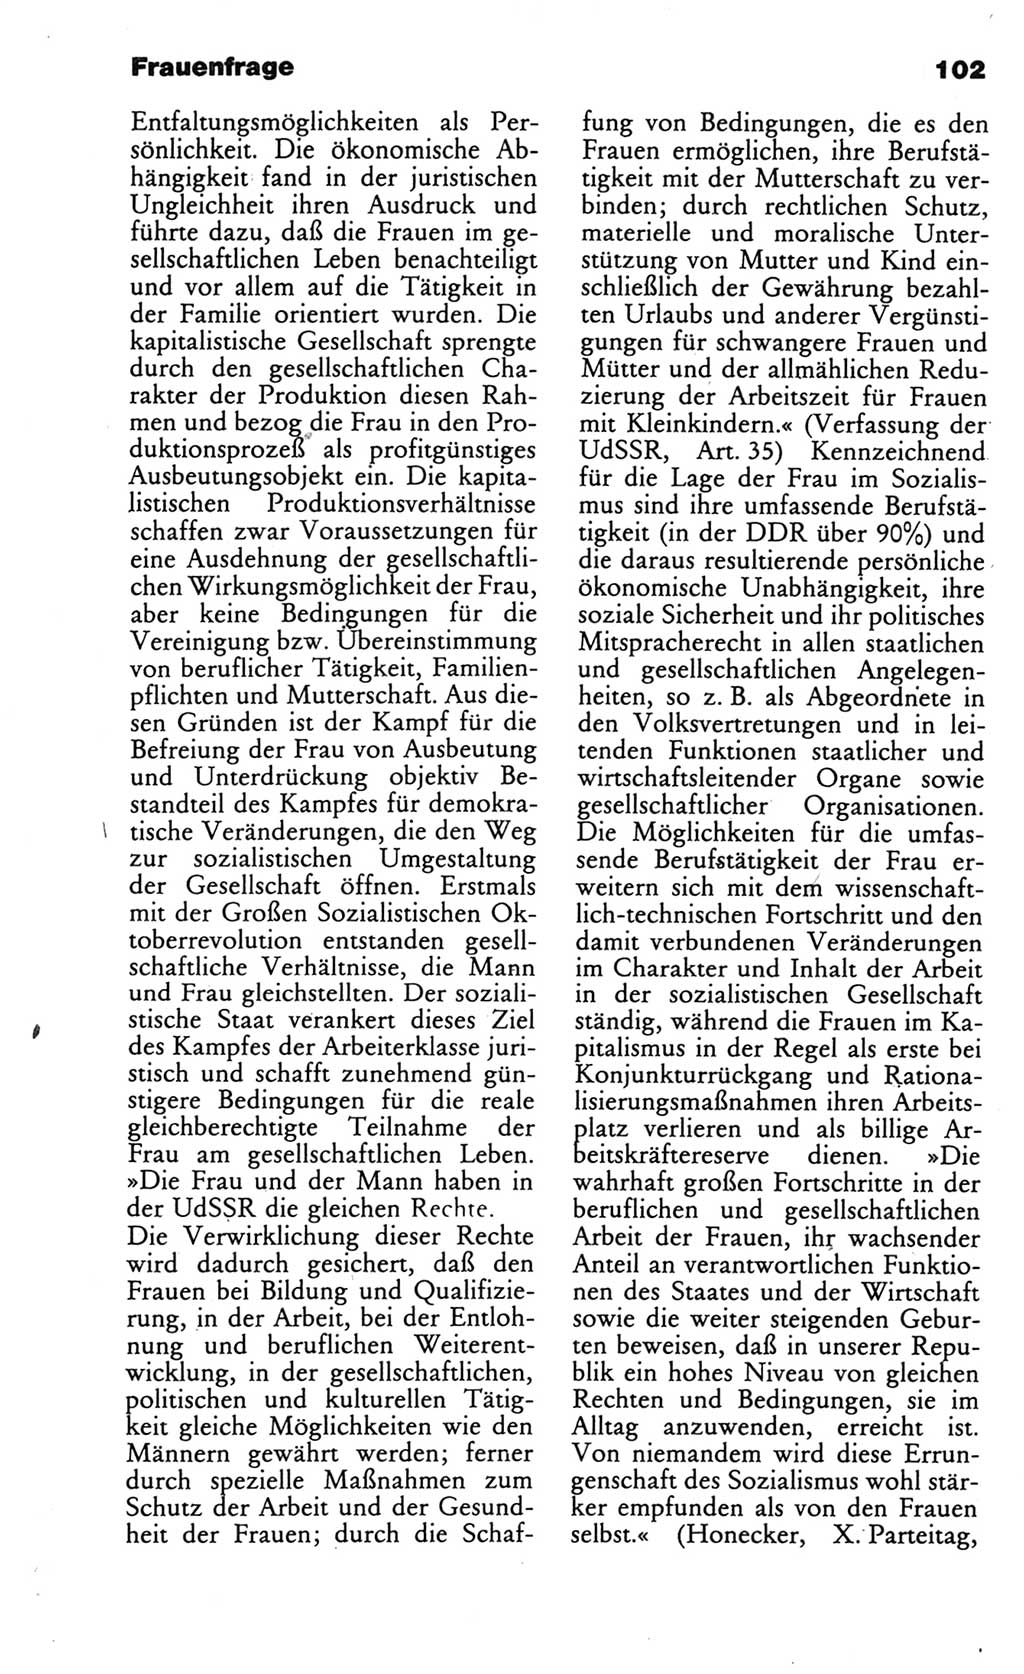 Wörterbuch des wissenschaftlichen Kommunismus [Deutsche Demokratische Republik (DDR)] 1986, Seite 102 (Wb. wiss. Komm. DDR 1986, S. 102)